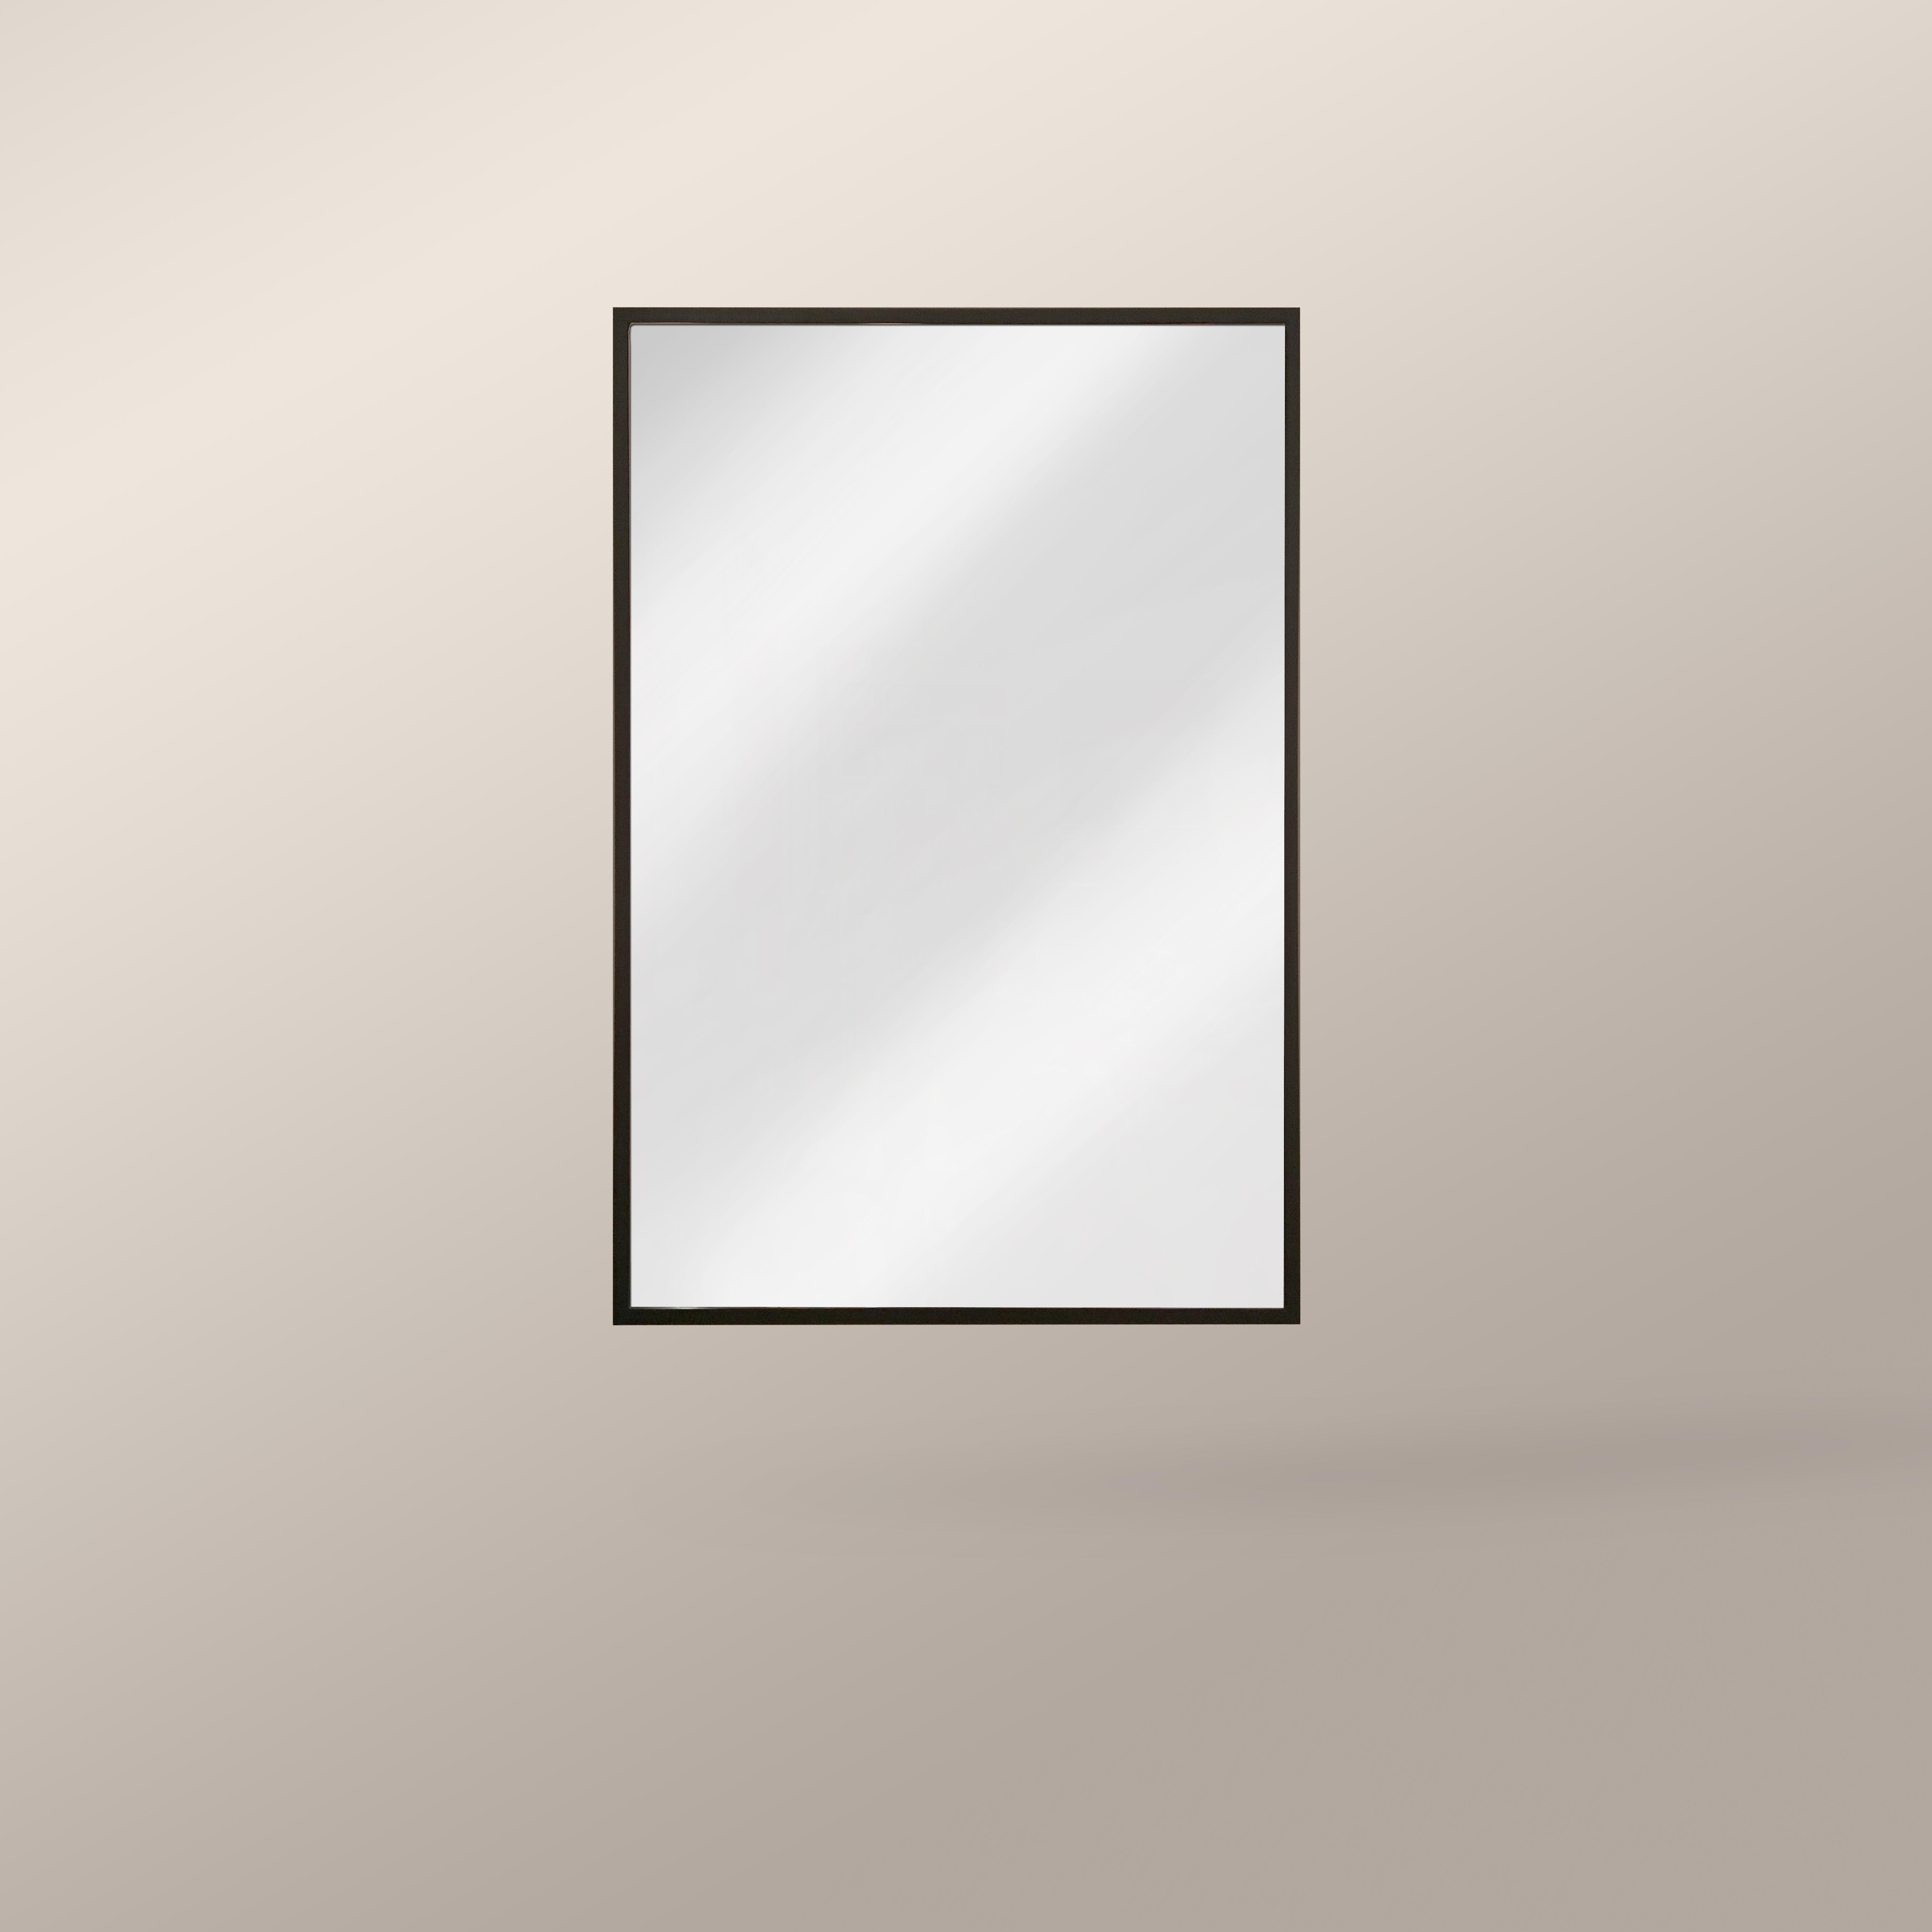 Miroir mural rectangulaire avec cadre en finition bronze foncé.

Comme tous nos articles, ce miroir est fabriqué sur commande et est donc hautement personnalisable, y compris en termes de taille et de finition. Les frais de personnalisation ne